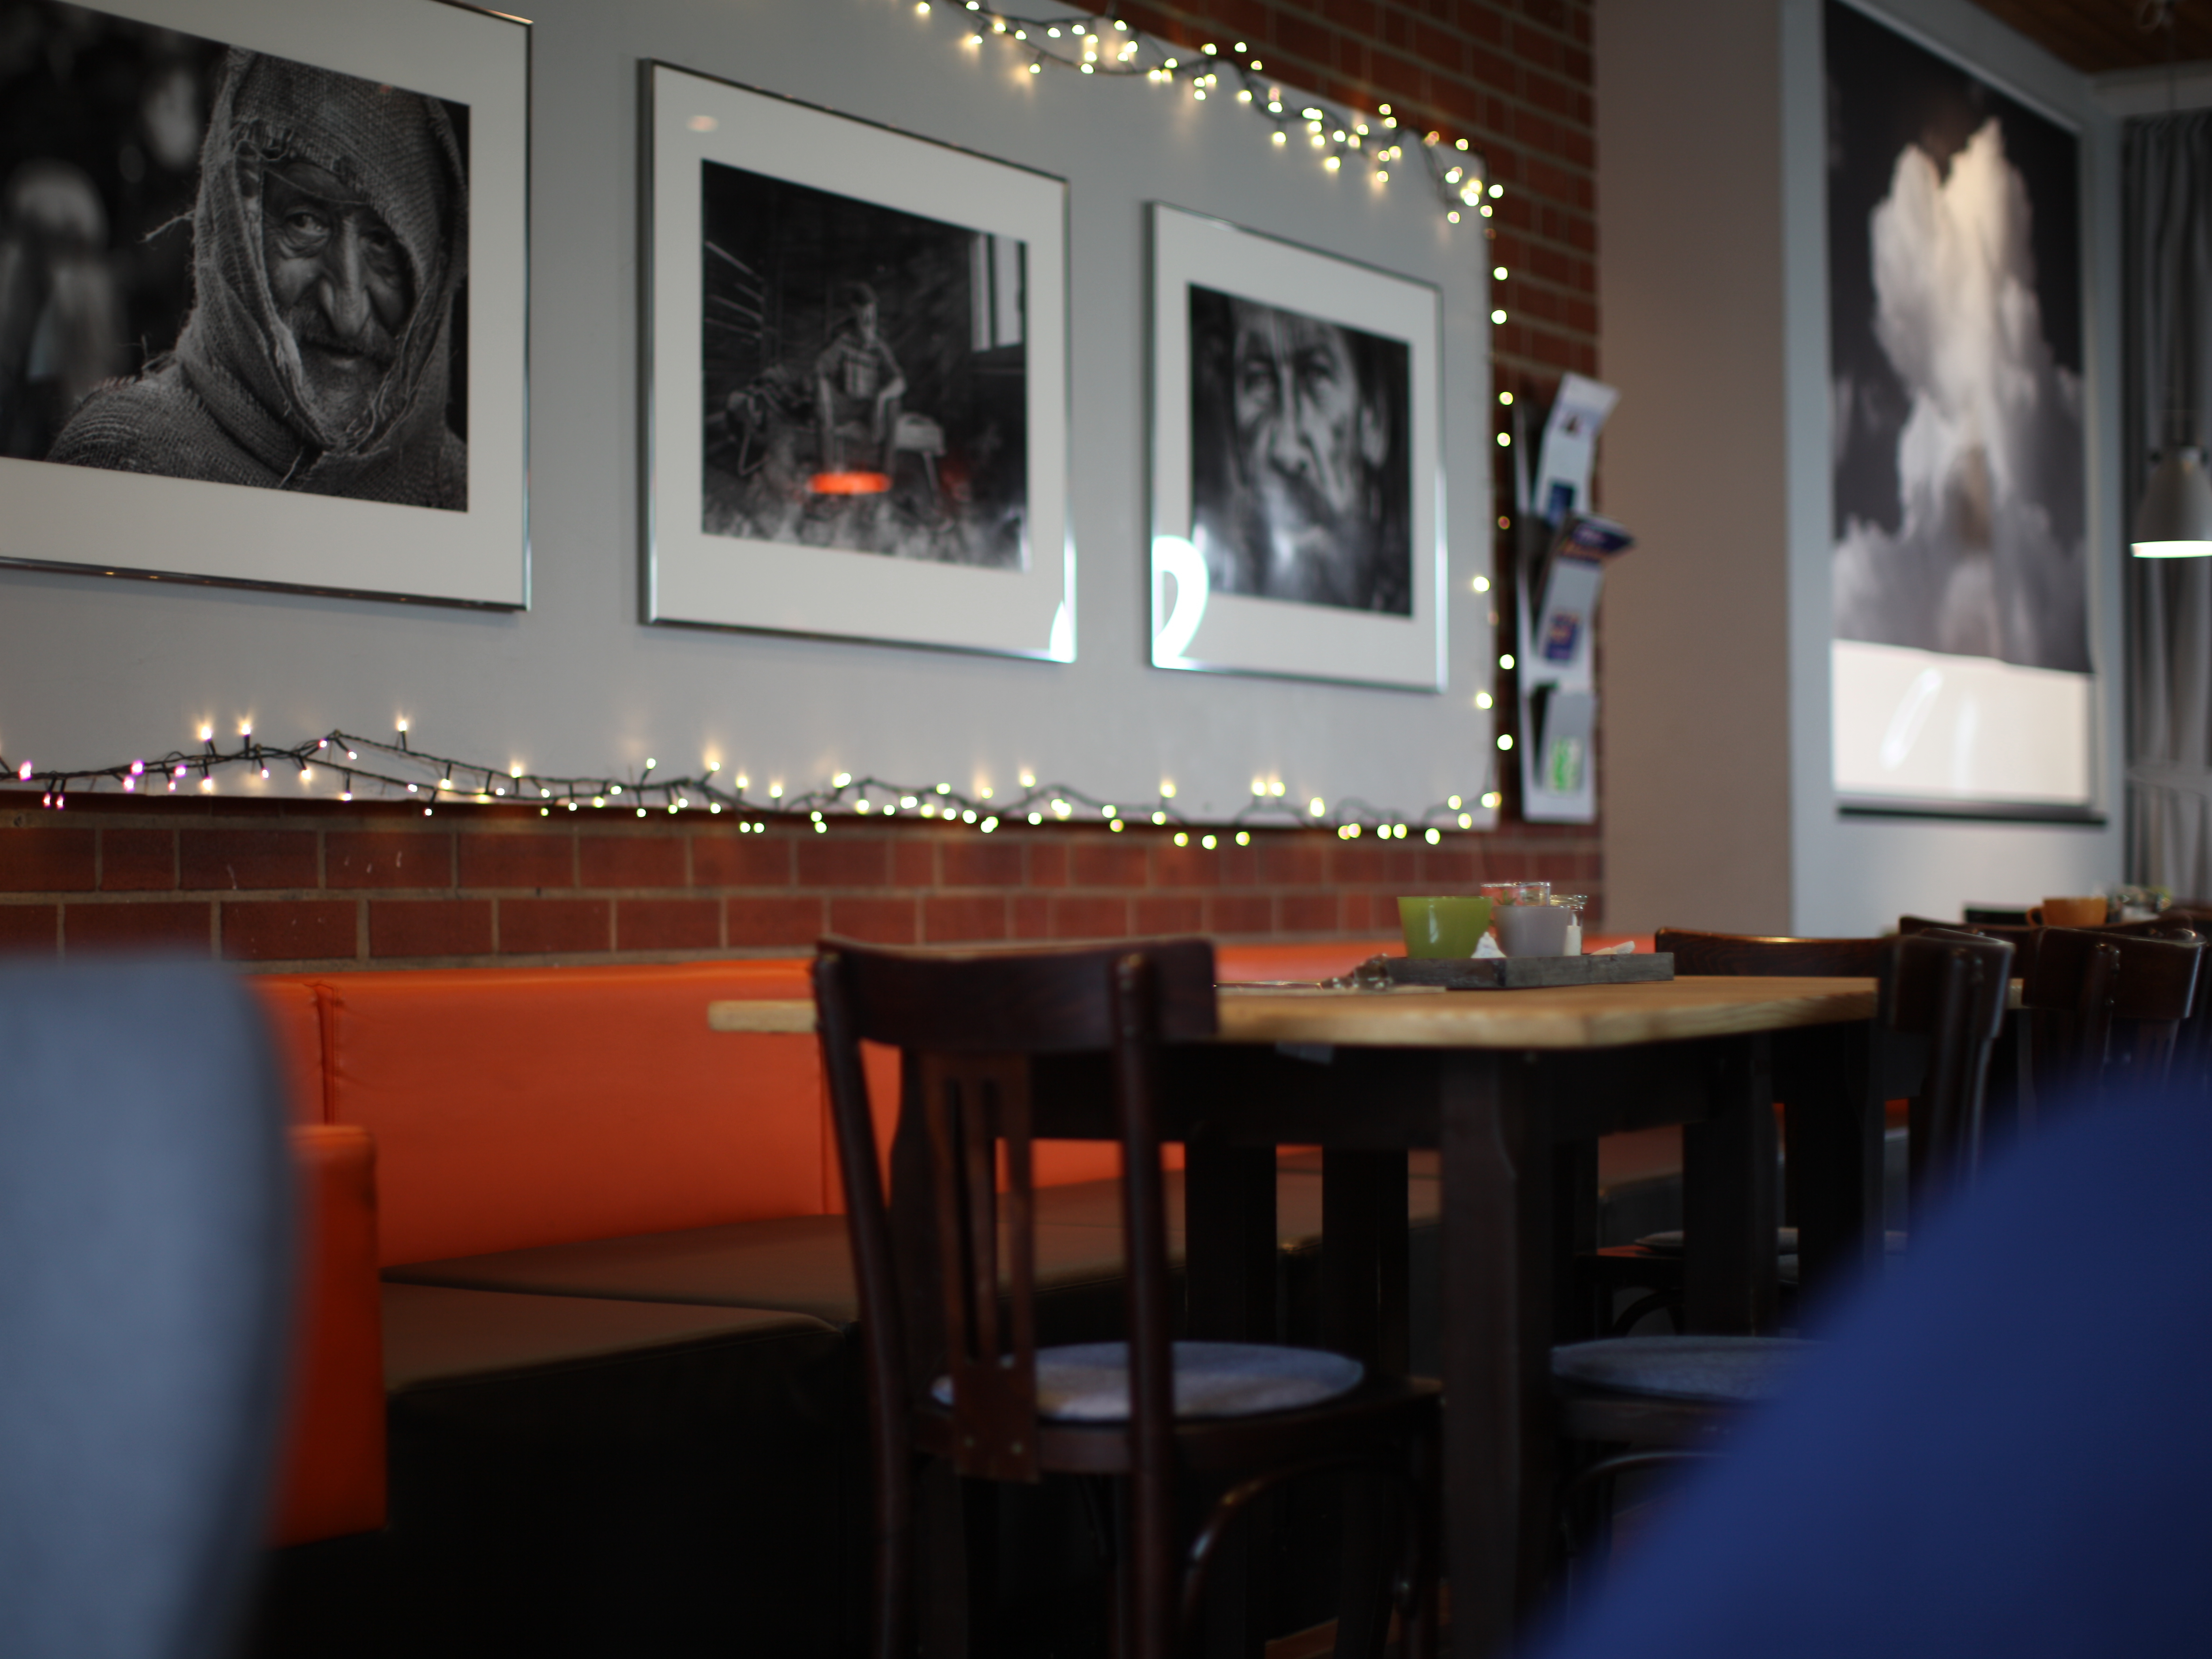 Sitzplätze im Café-Lorenz; an der Wand große schwarz-weiß Fotografien